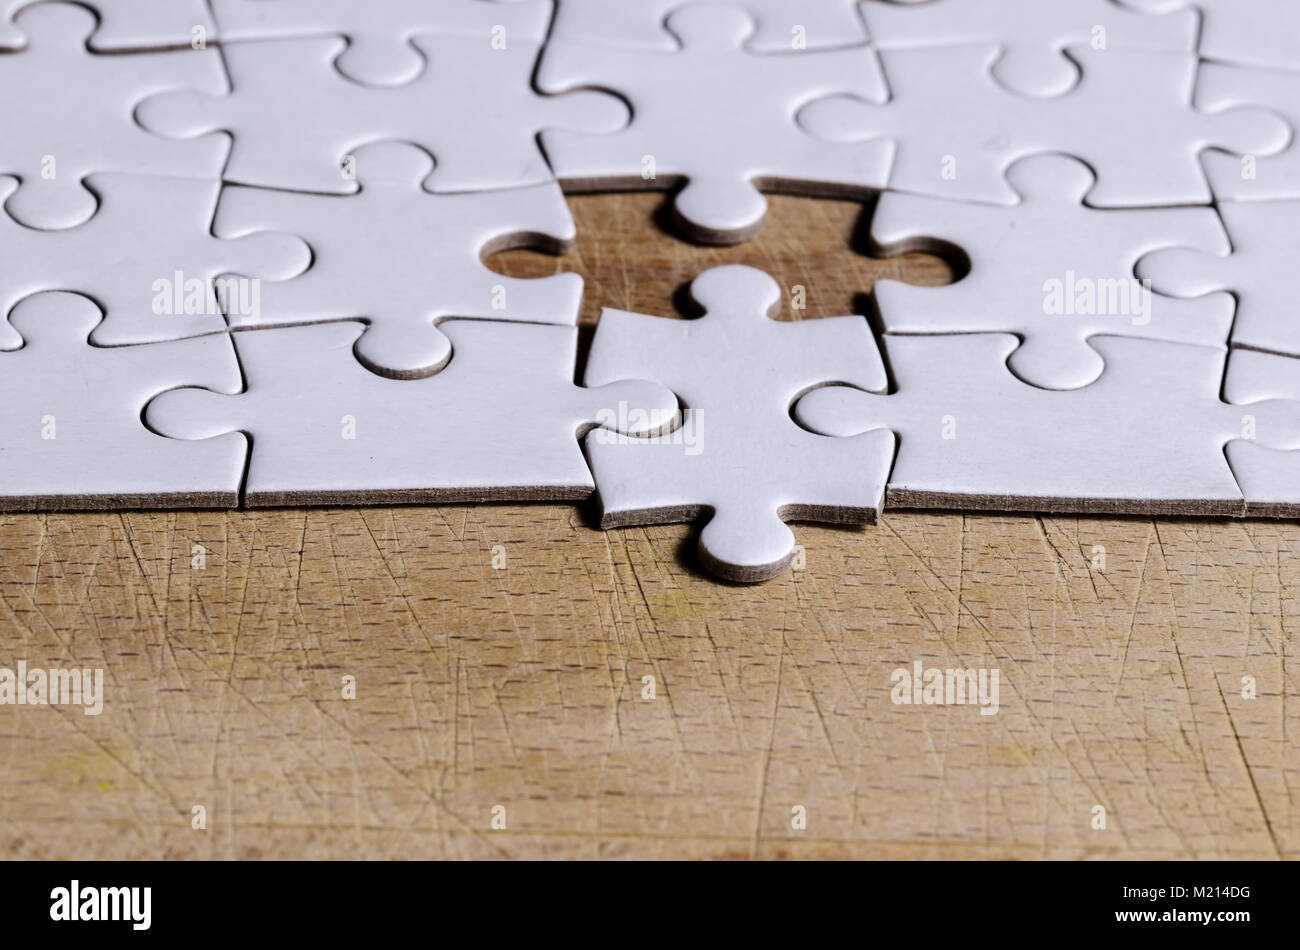 Bianco/jigsaw puzzle con un pezzo in posizione errata, su tavoli in legno nero sfondo, simbolo di problem solving e nuova visione Foto Stock